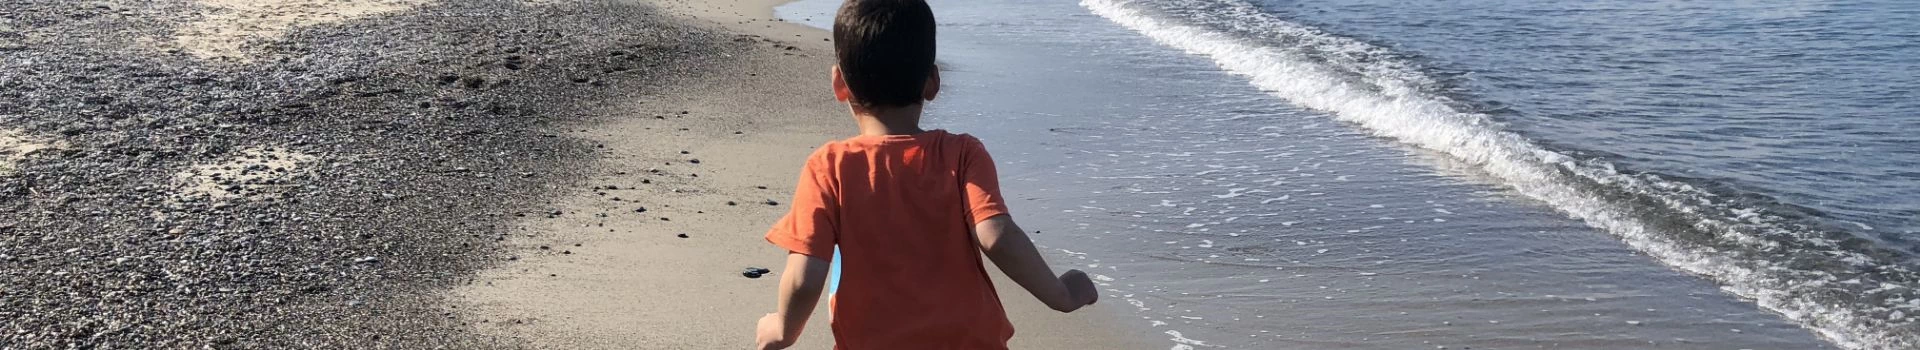 Chłopiec chodzący po plaży